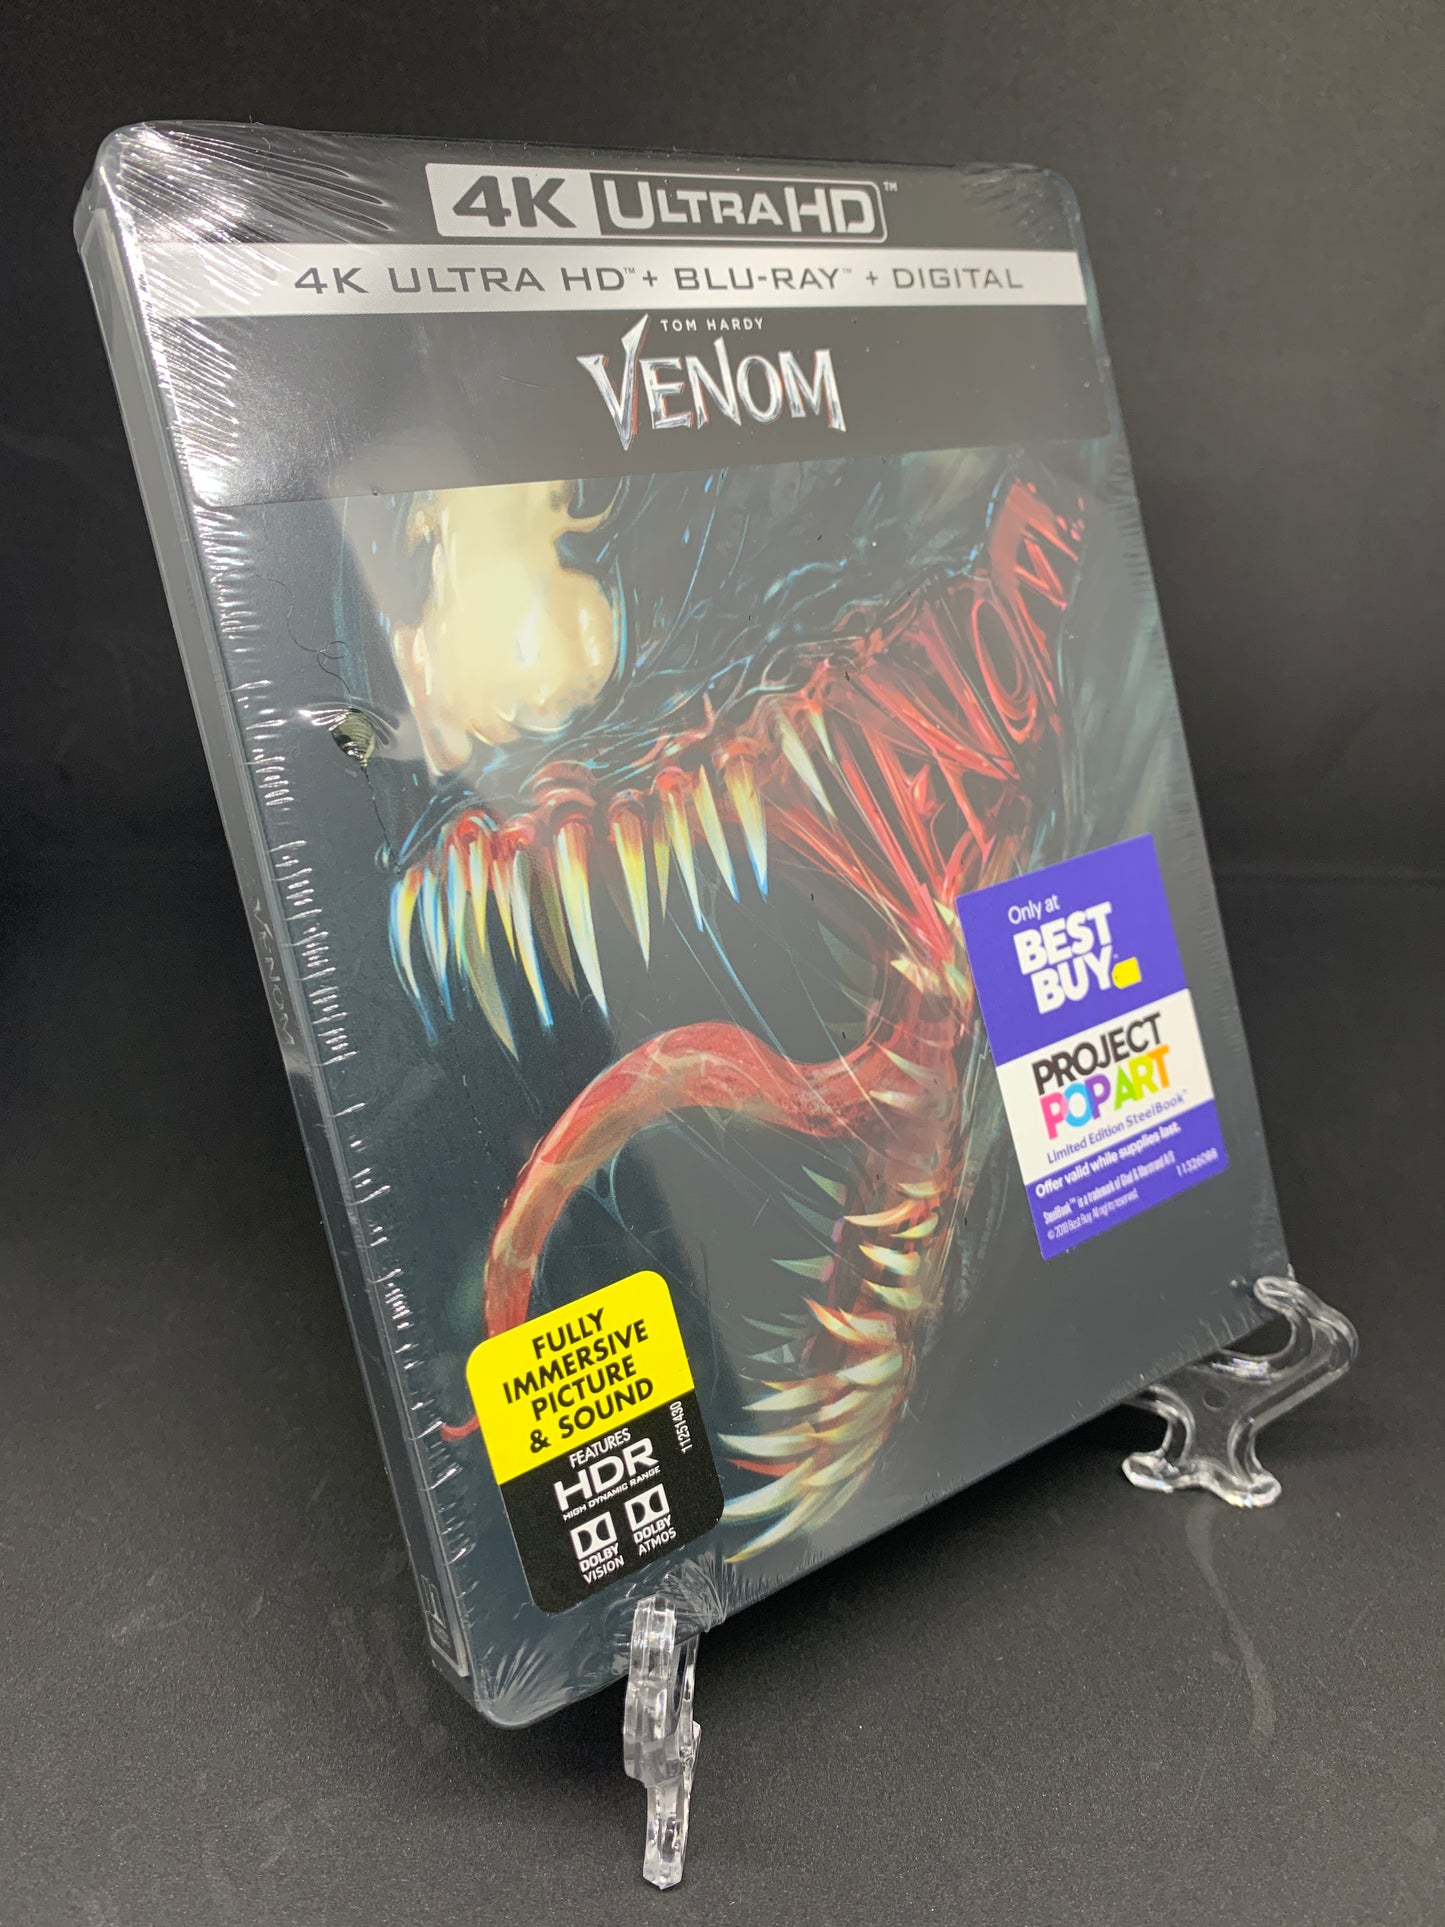 Venom (4K Ultra HD + Blu-ray + Digital) Steelbook